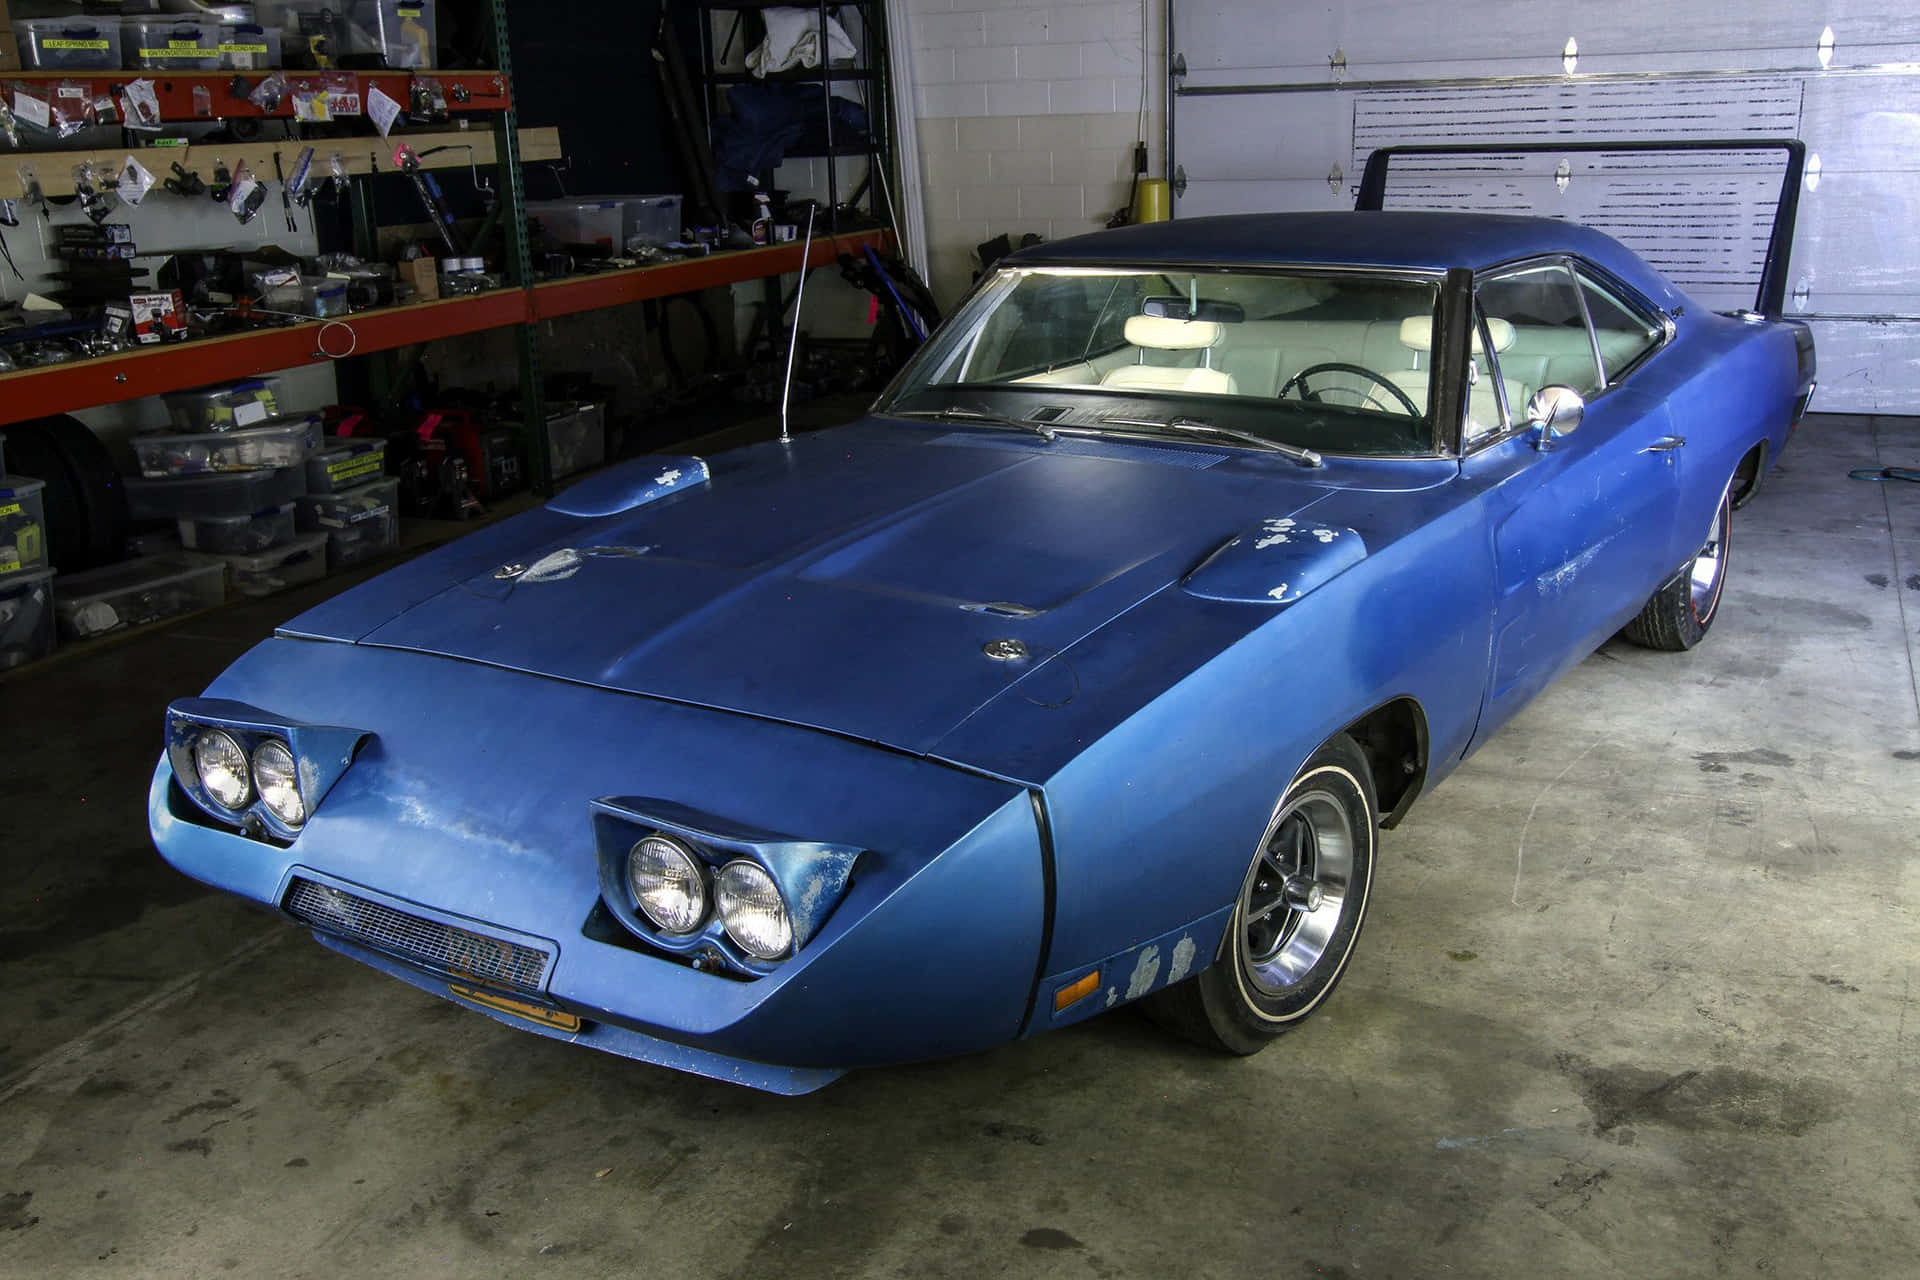 Enblå Bil Er Parkeret I En Garage.